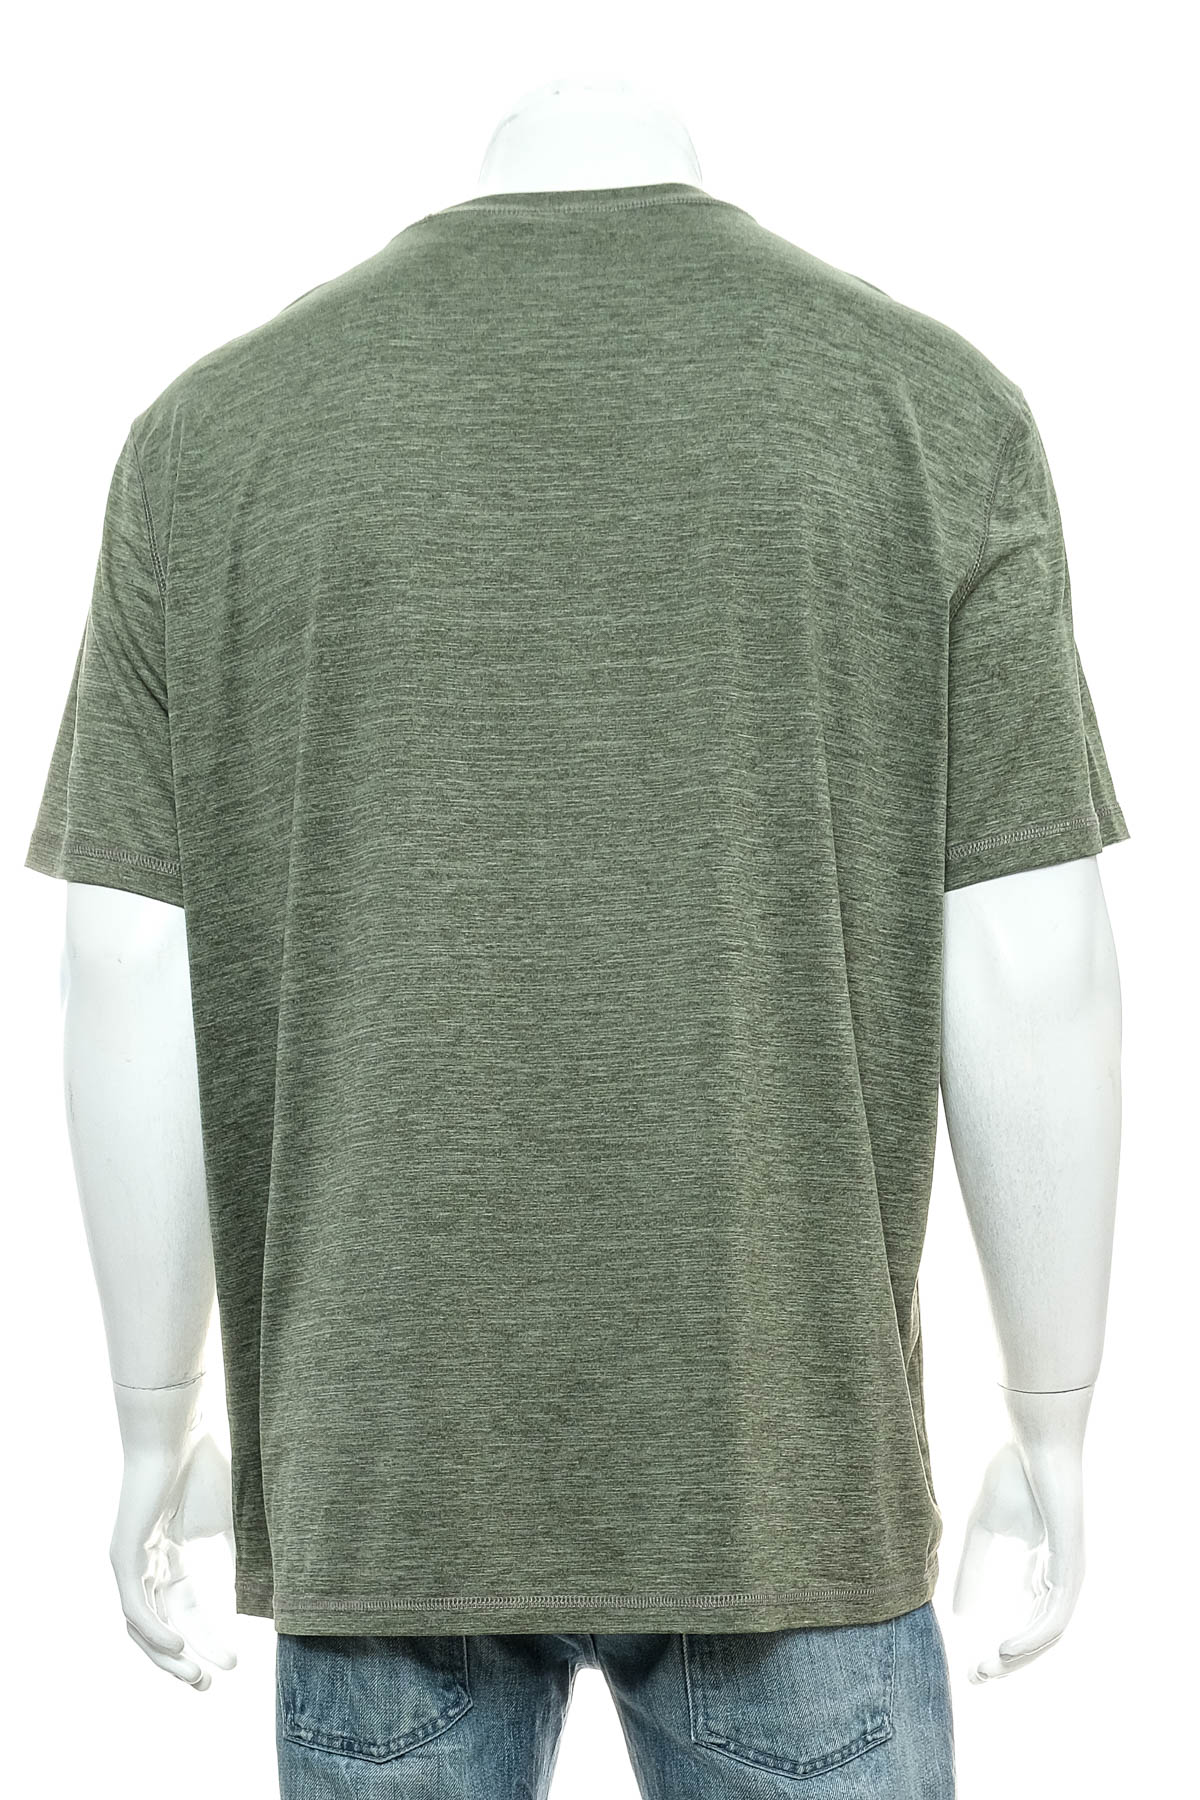 Men's T-shirt - G.H. Bass & Co. - 1